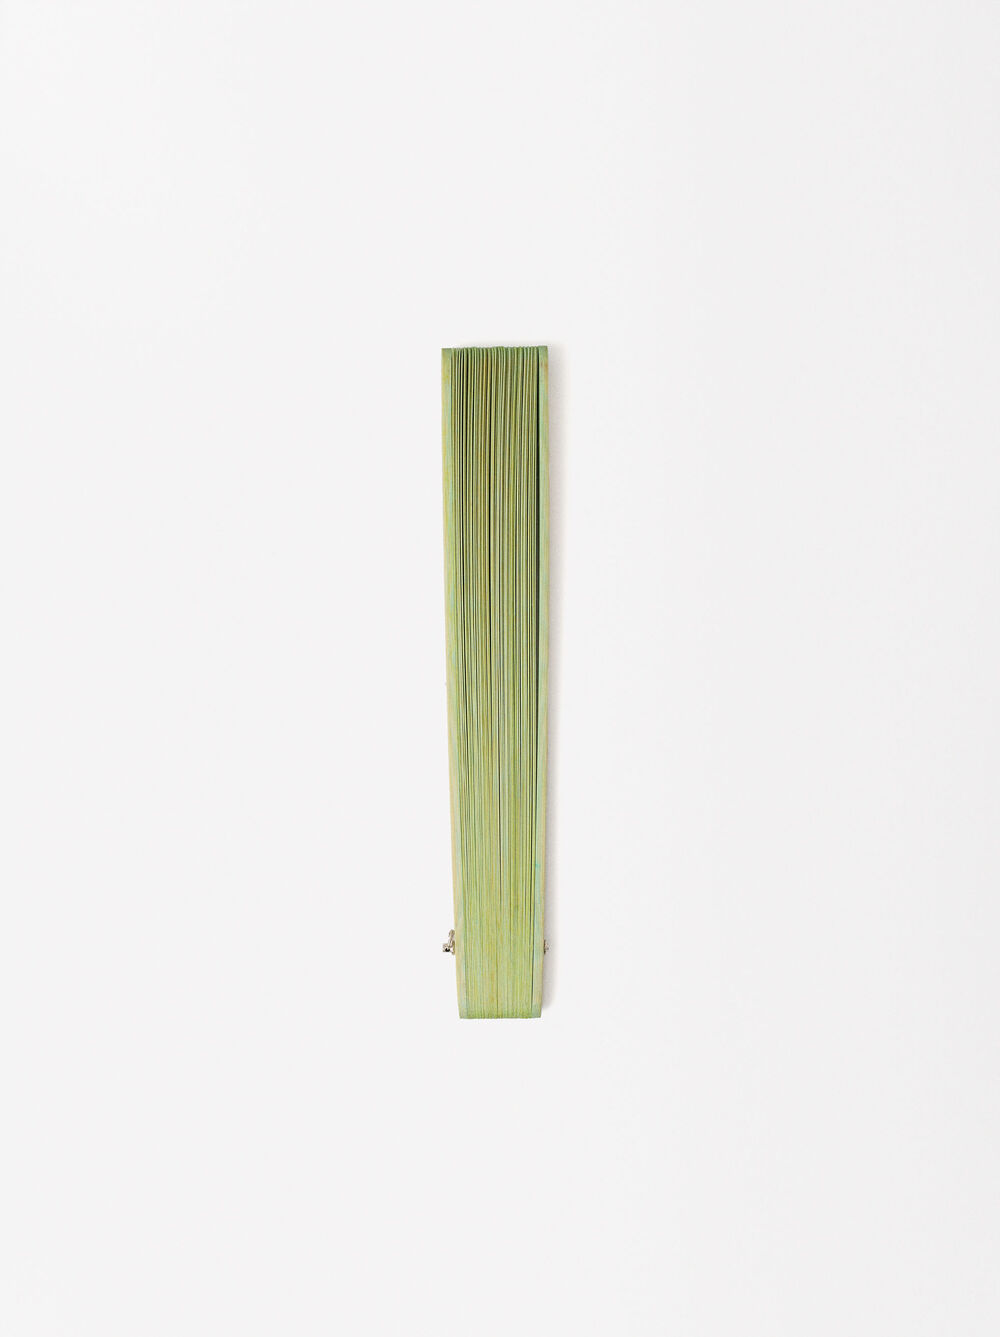 Abanico Bambú Con Perforado image number 2.0